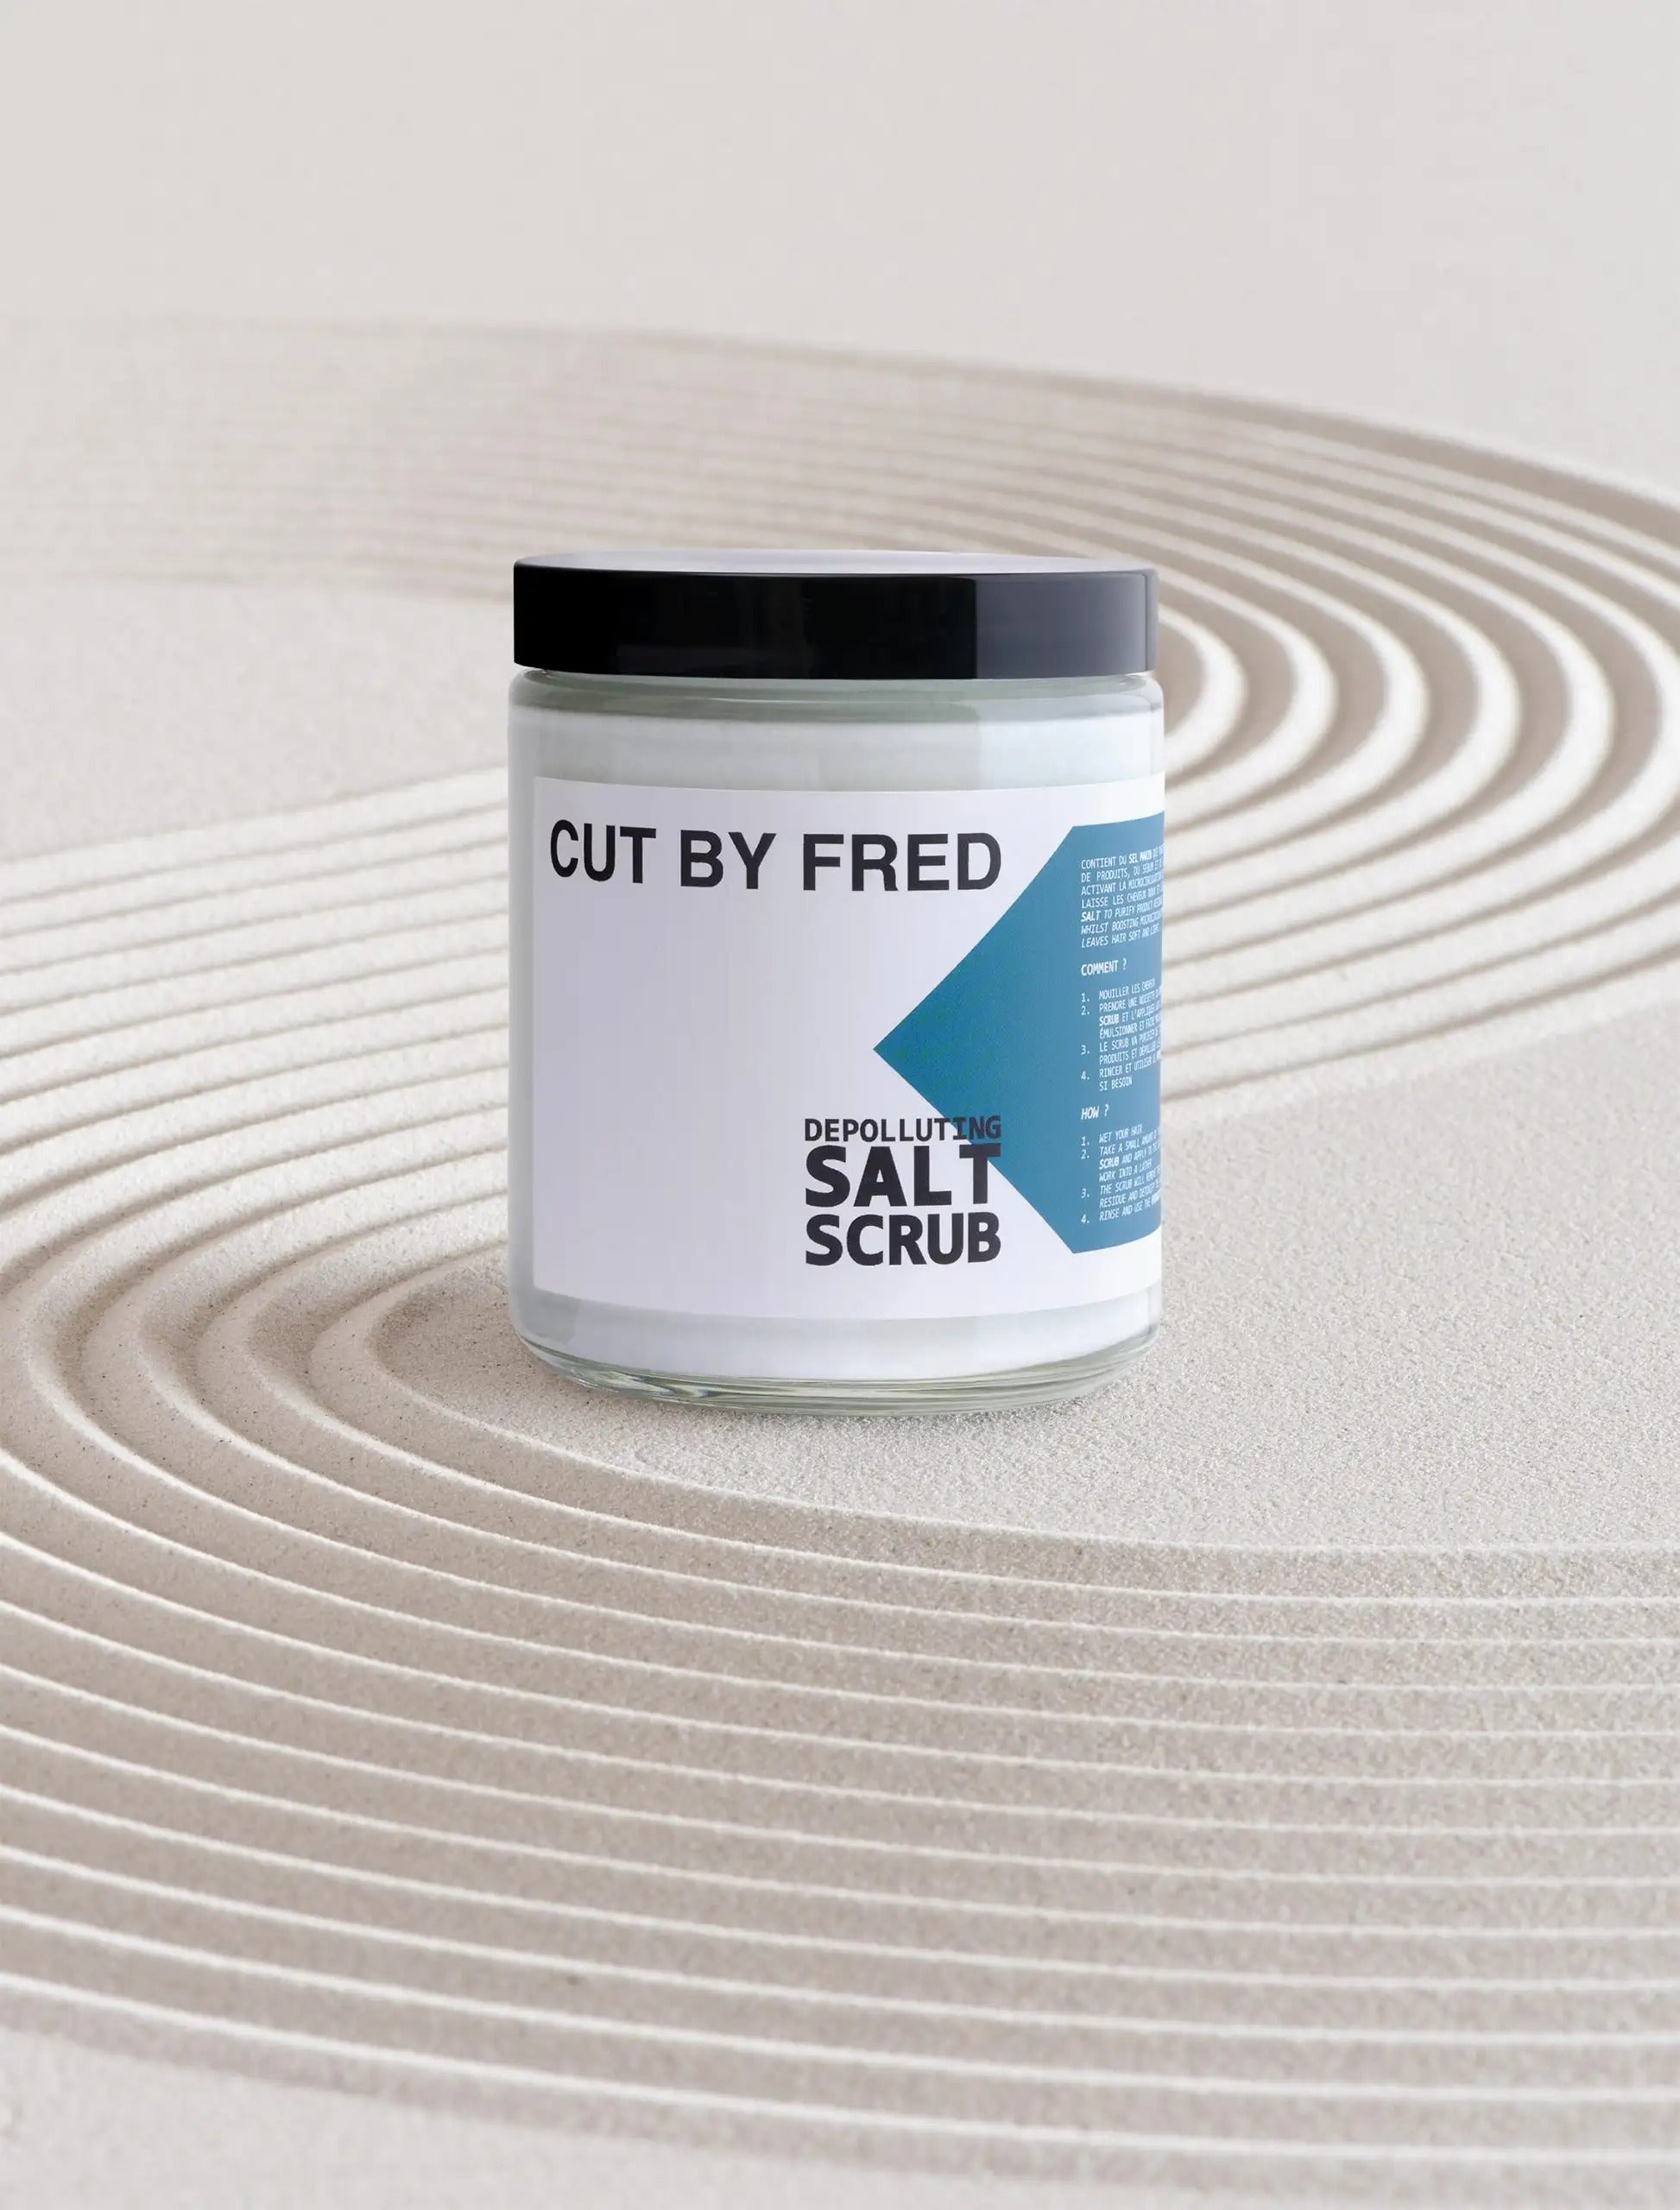 Gommage Cuir Chevelu Depolluting Salt Scrub Cut By Fred Suisse